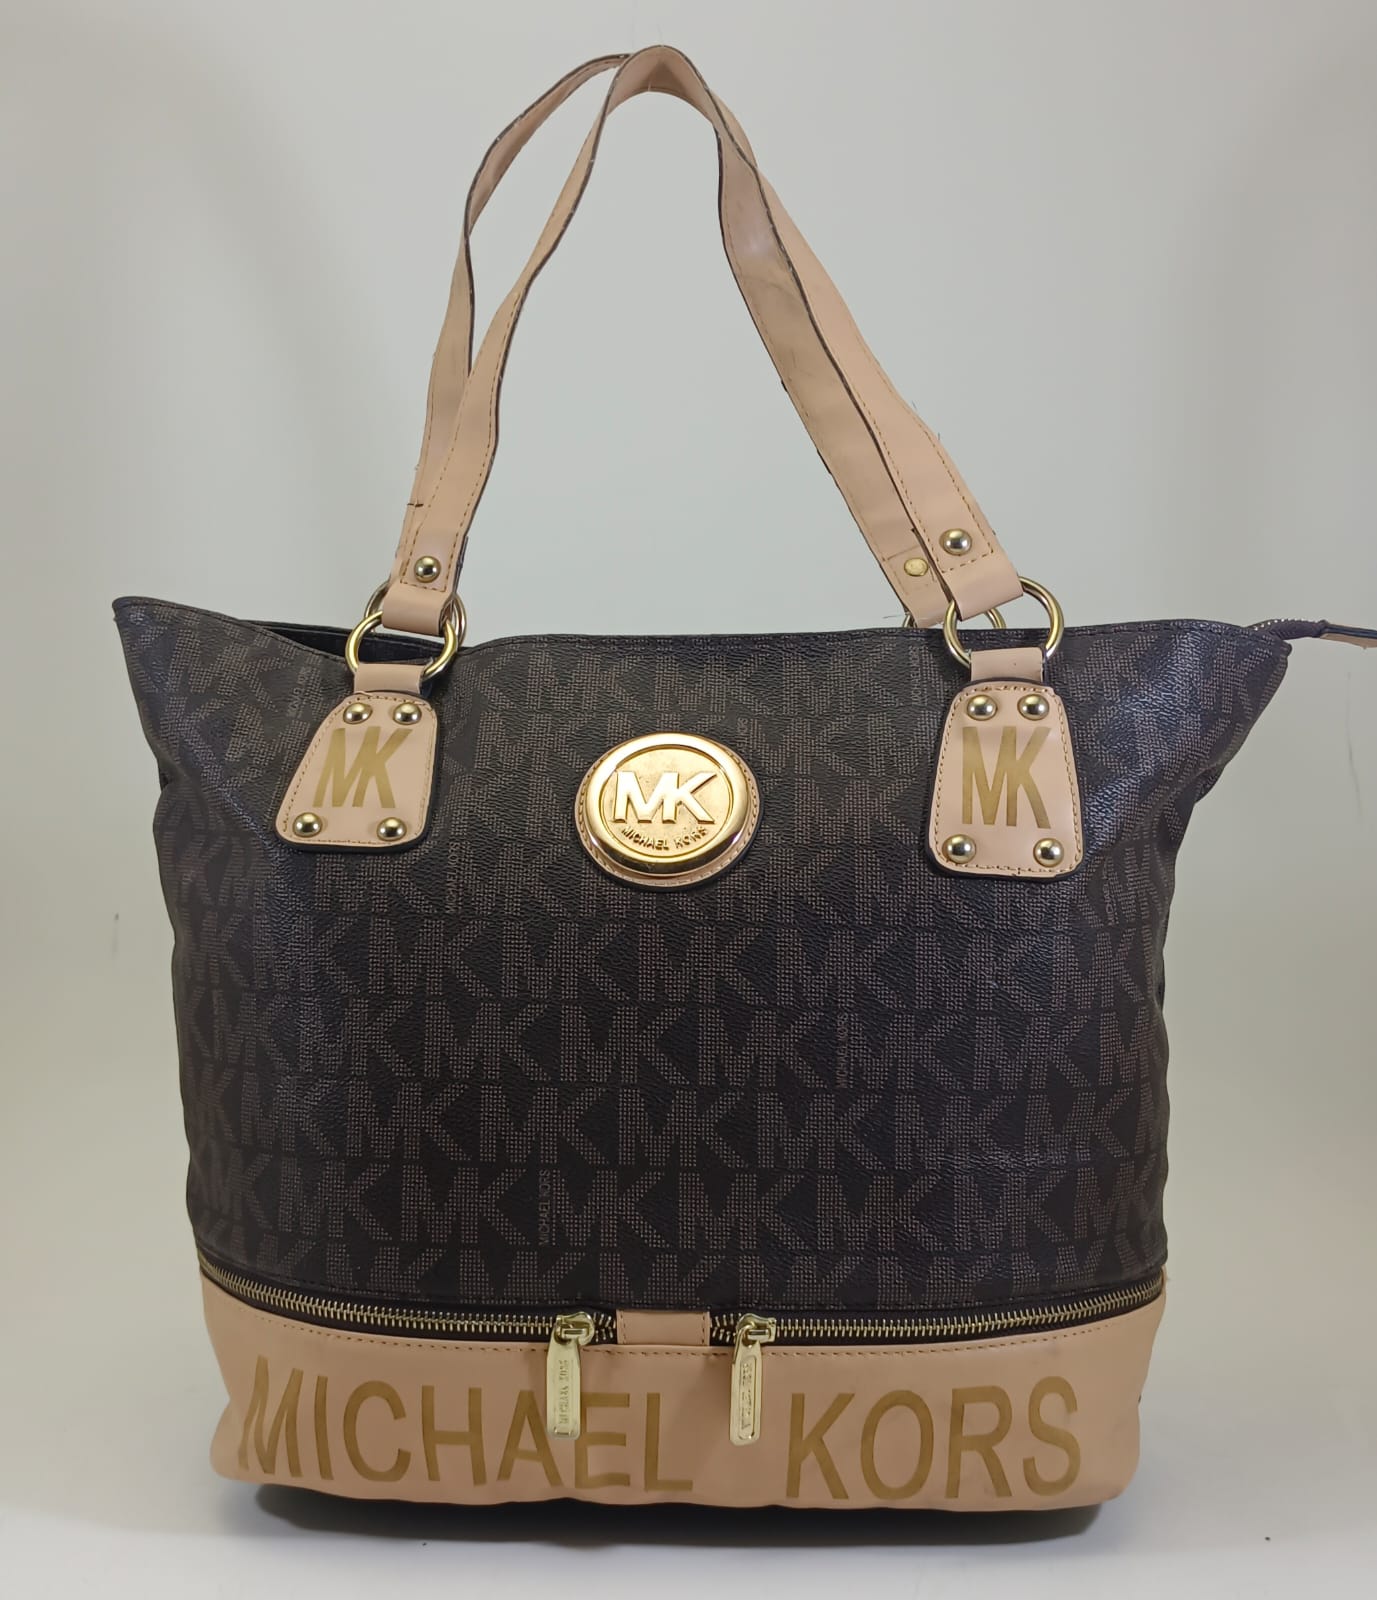 Michael Kors Hand bag